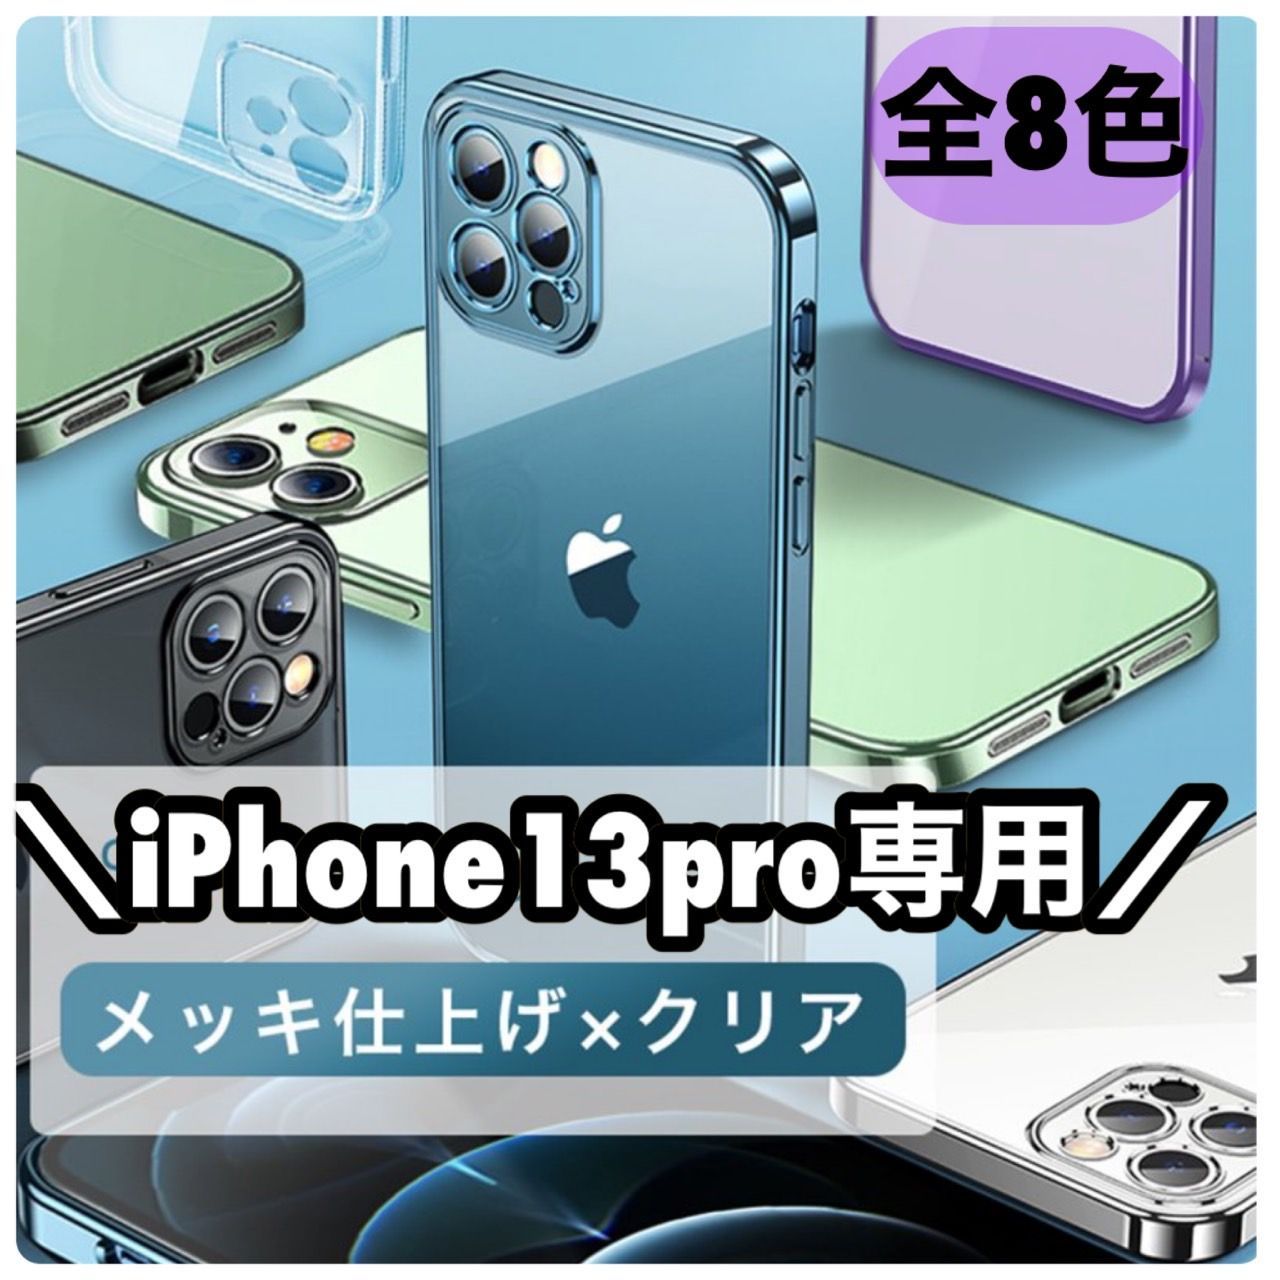 ☆13pro専用ページ☆シンプル メタリック 軽量 スマホ iphoneケース